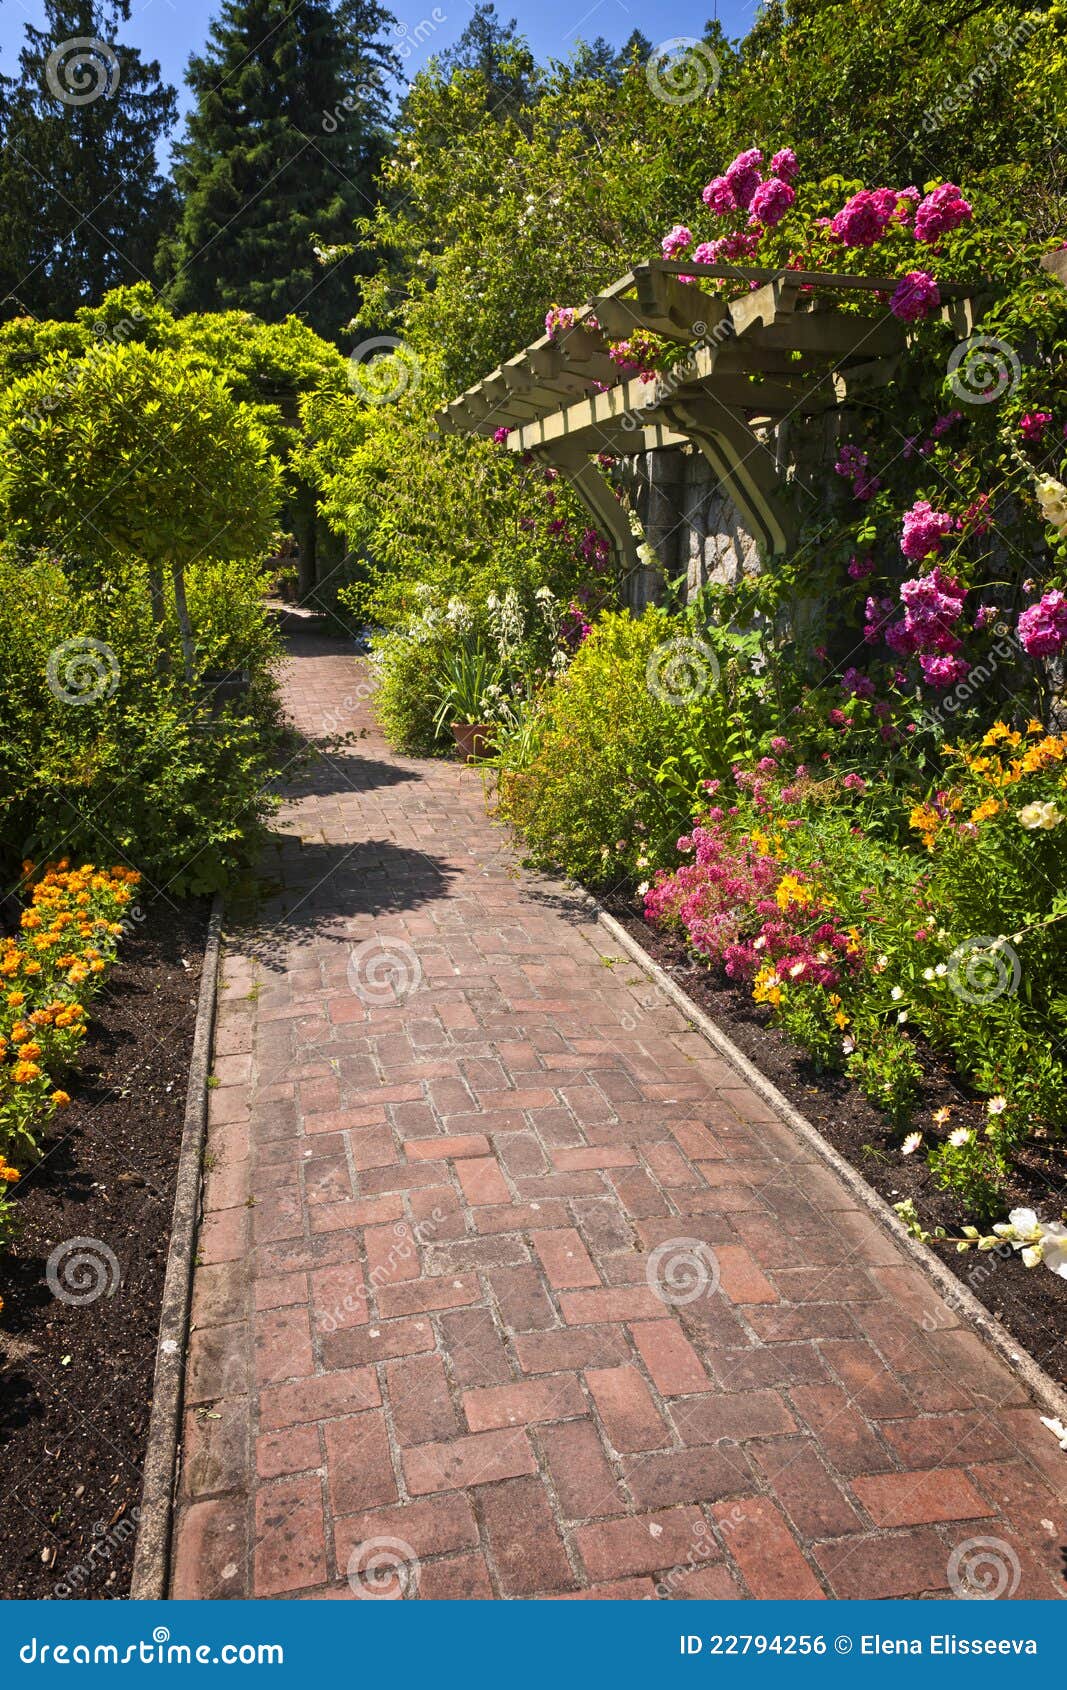 flower garden paved path 22794256